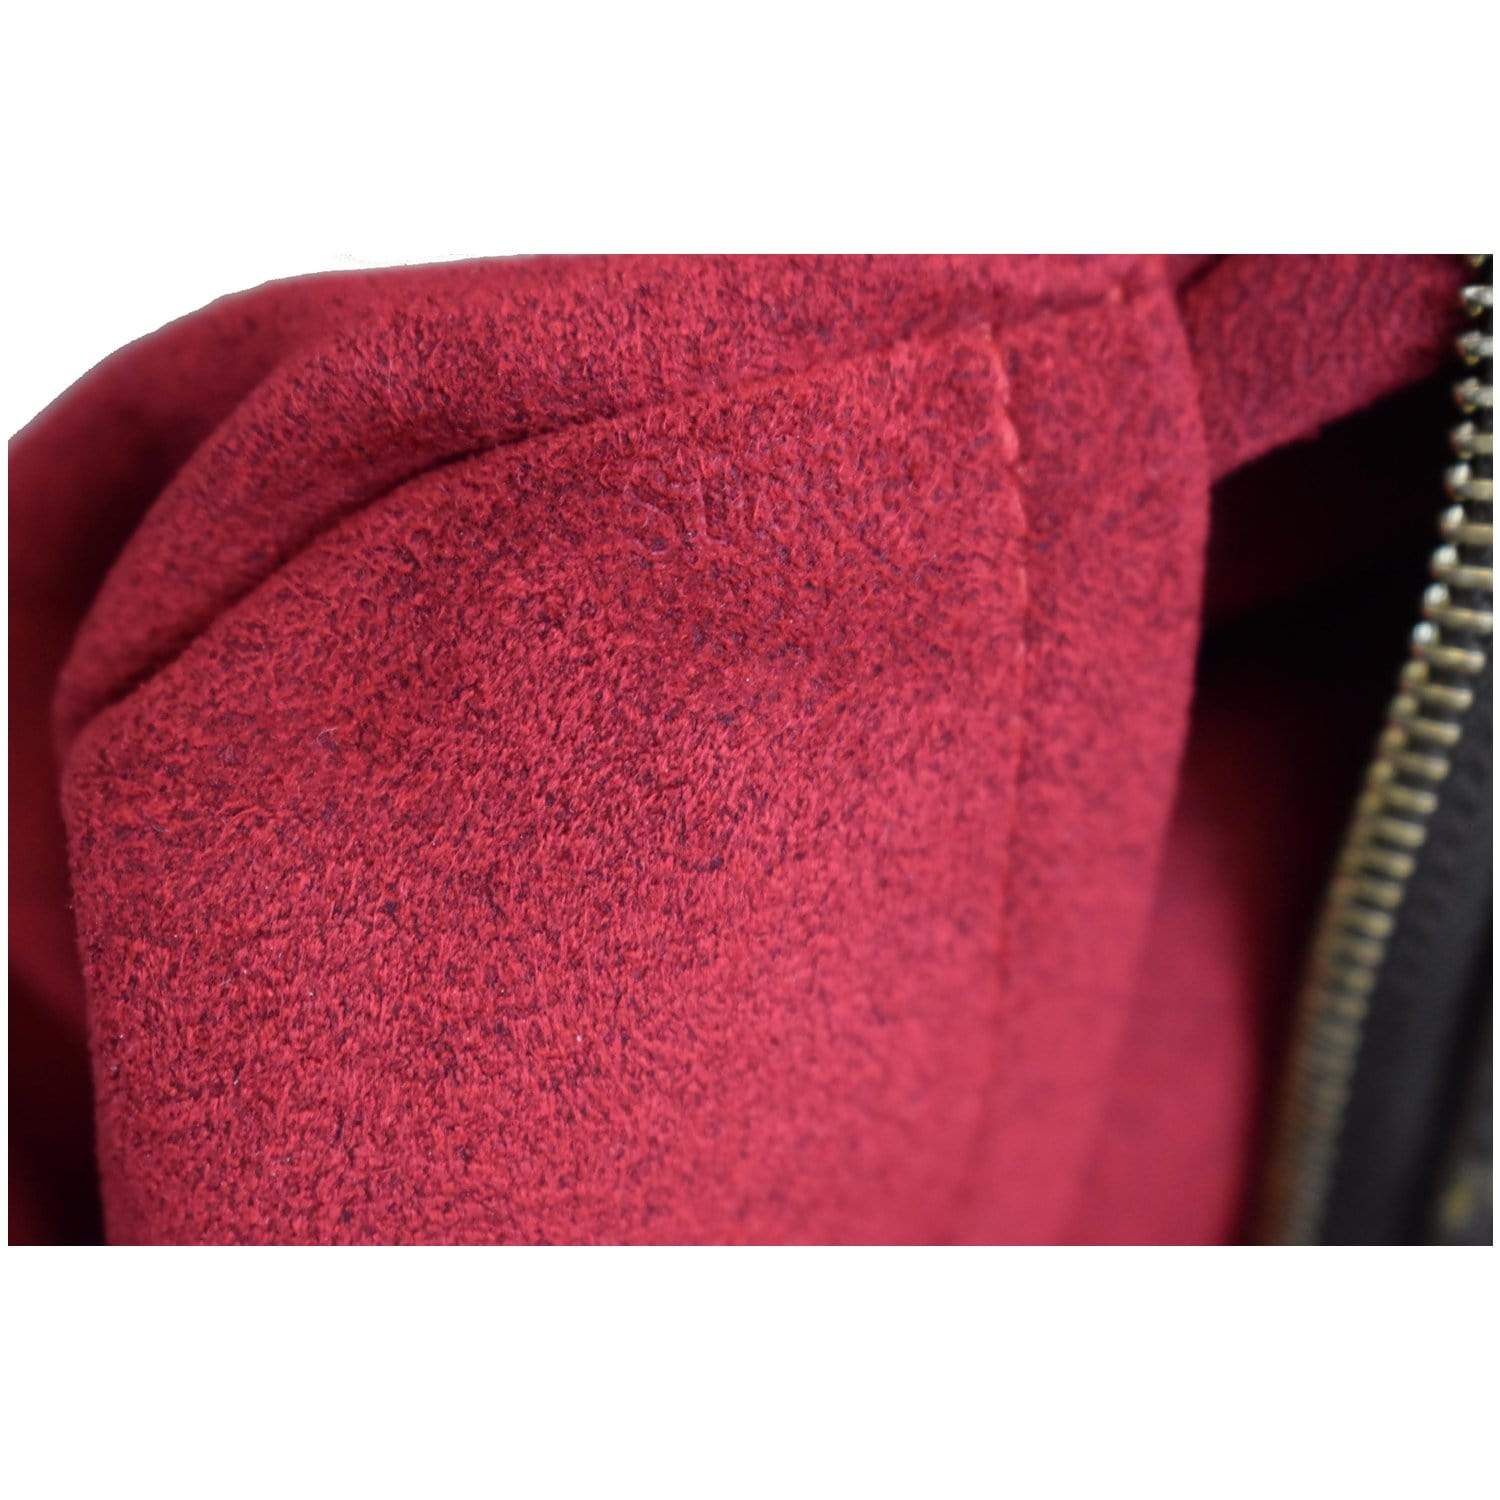 Sold at Auction: Louis Vuitton, Louis Vuitton - Viva Cite MM - Brown / Tan  Monogram Shoulder Bag